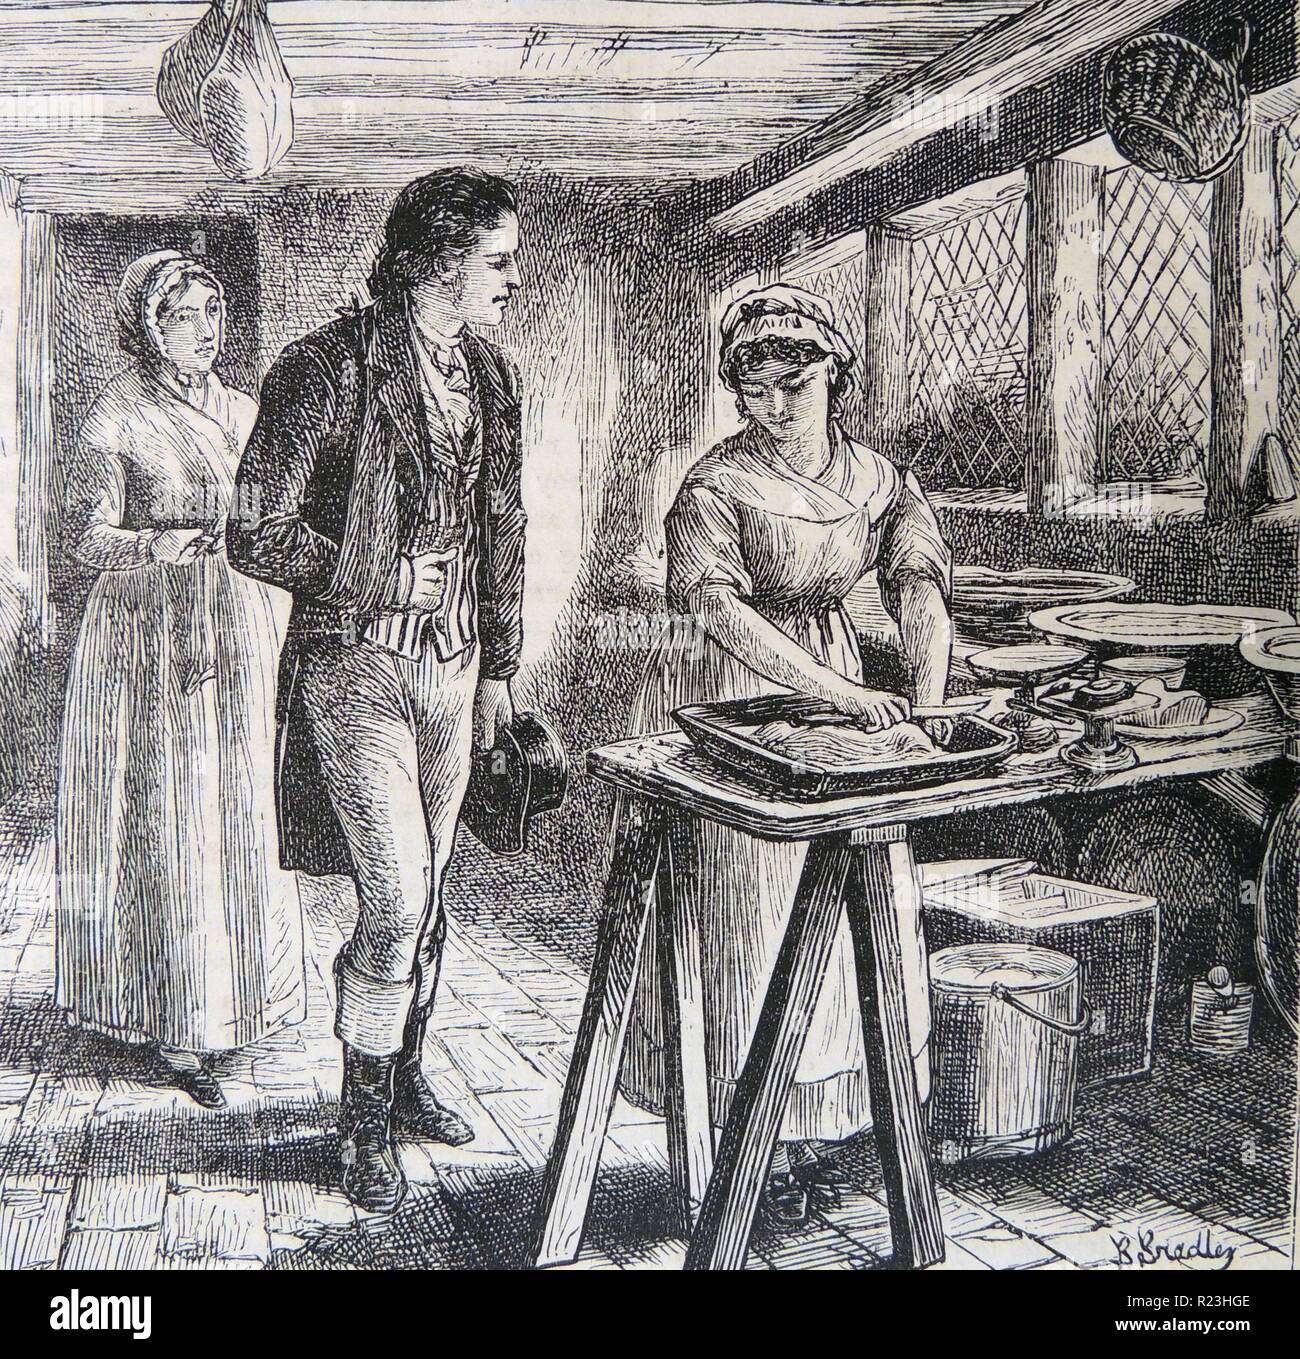 Hetty Sorrel, arbeiten in der Molkerei, besucht von Kapitän Donnitorne, ihr Verführer, während hier Tante, Frau Poyser an schaut. Abbildung von Basil Bradley (1842-1904) für ''Adam Bede'', George Eliot (Mary Ann Evans) erster Roman, erschienen 1859. Stockfoto